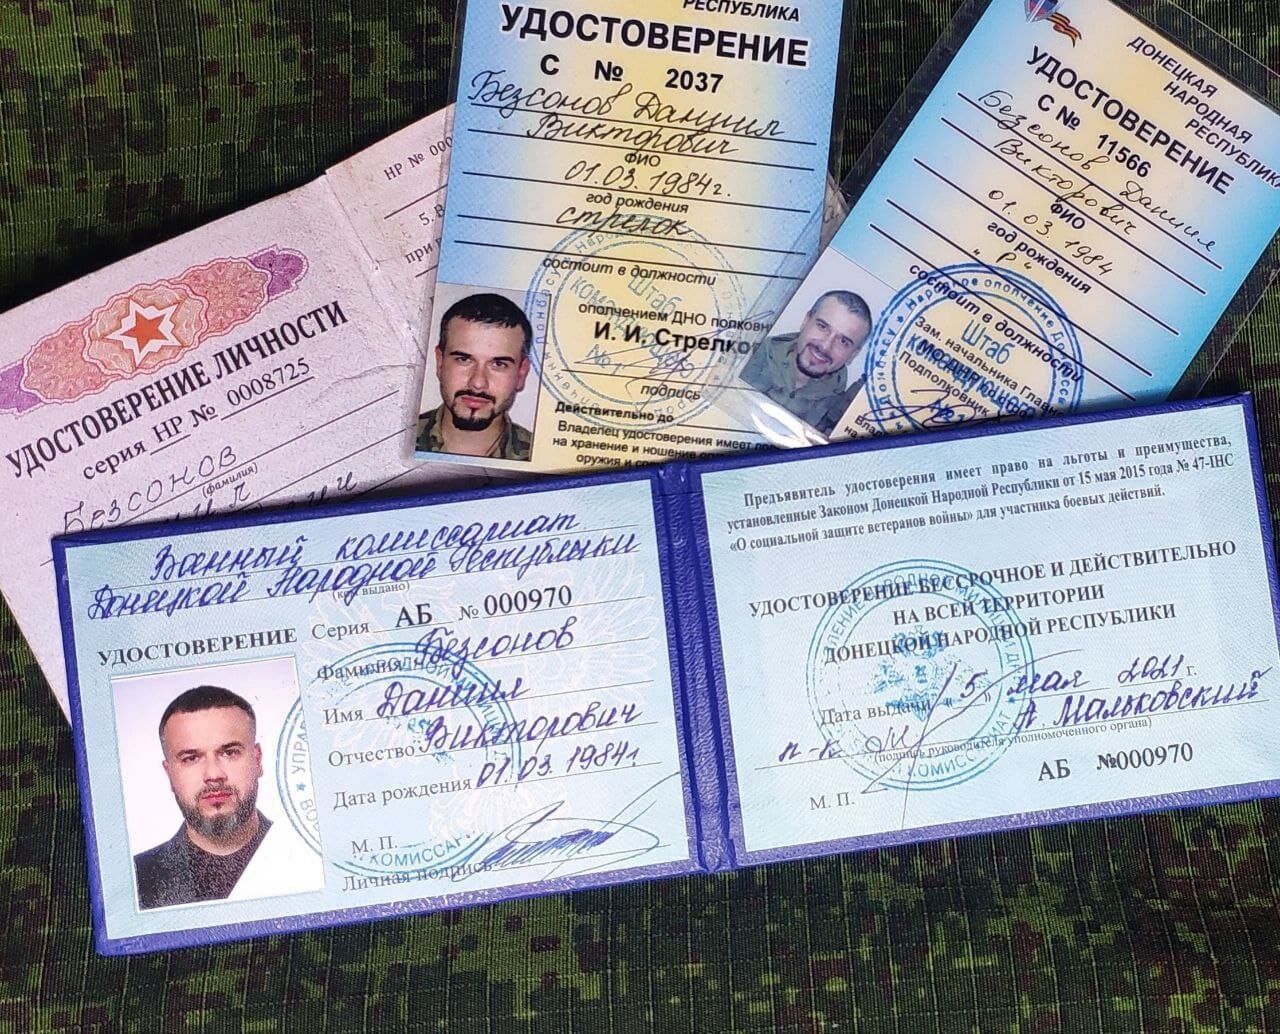 Мошенник Даниил Безсонов похвастался удостоверением "УБД" от главаря "ДНР" Пушилина